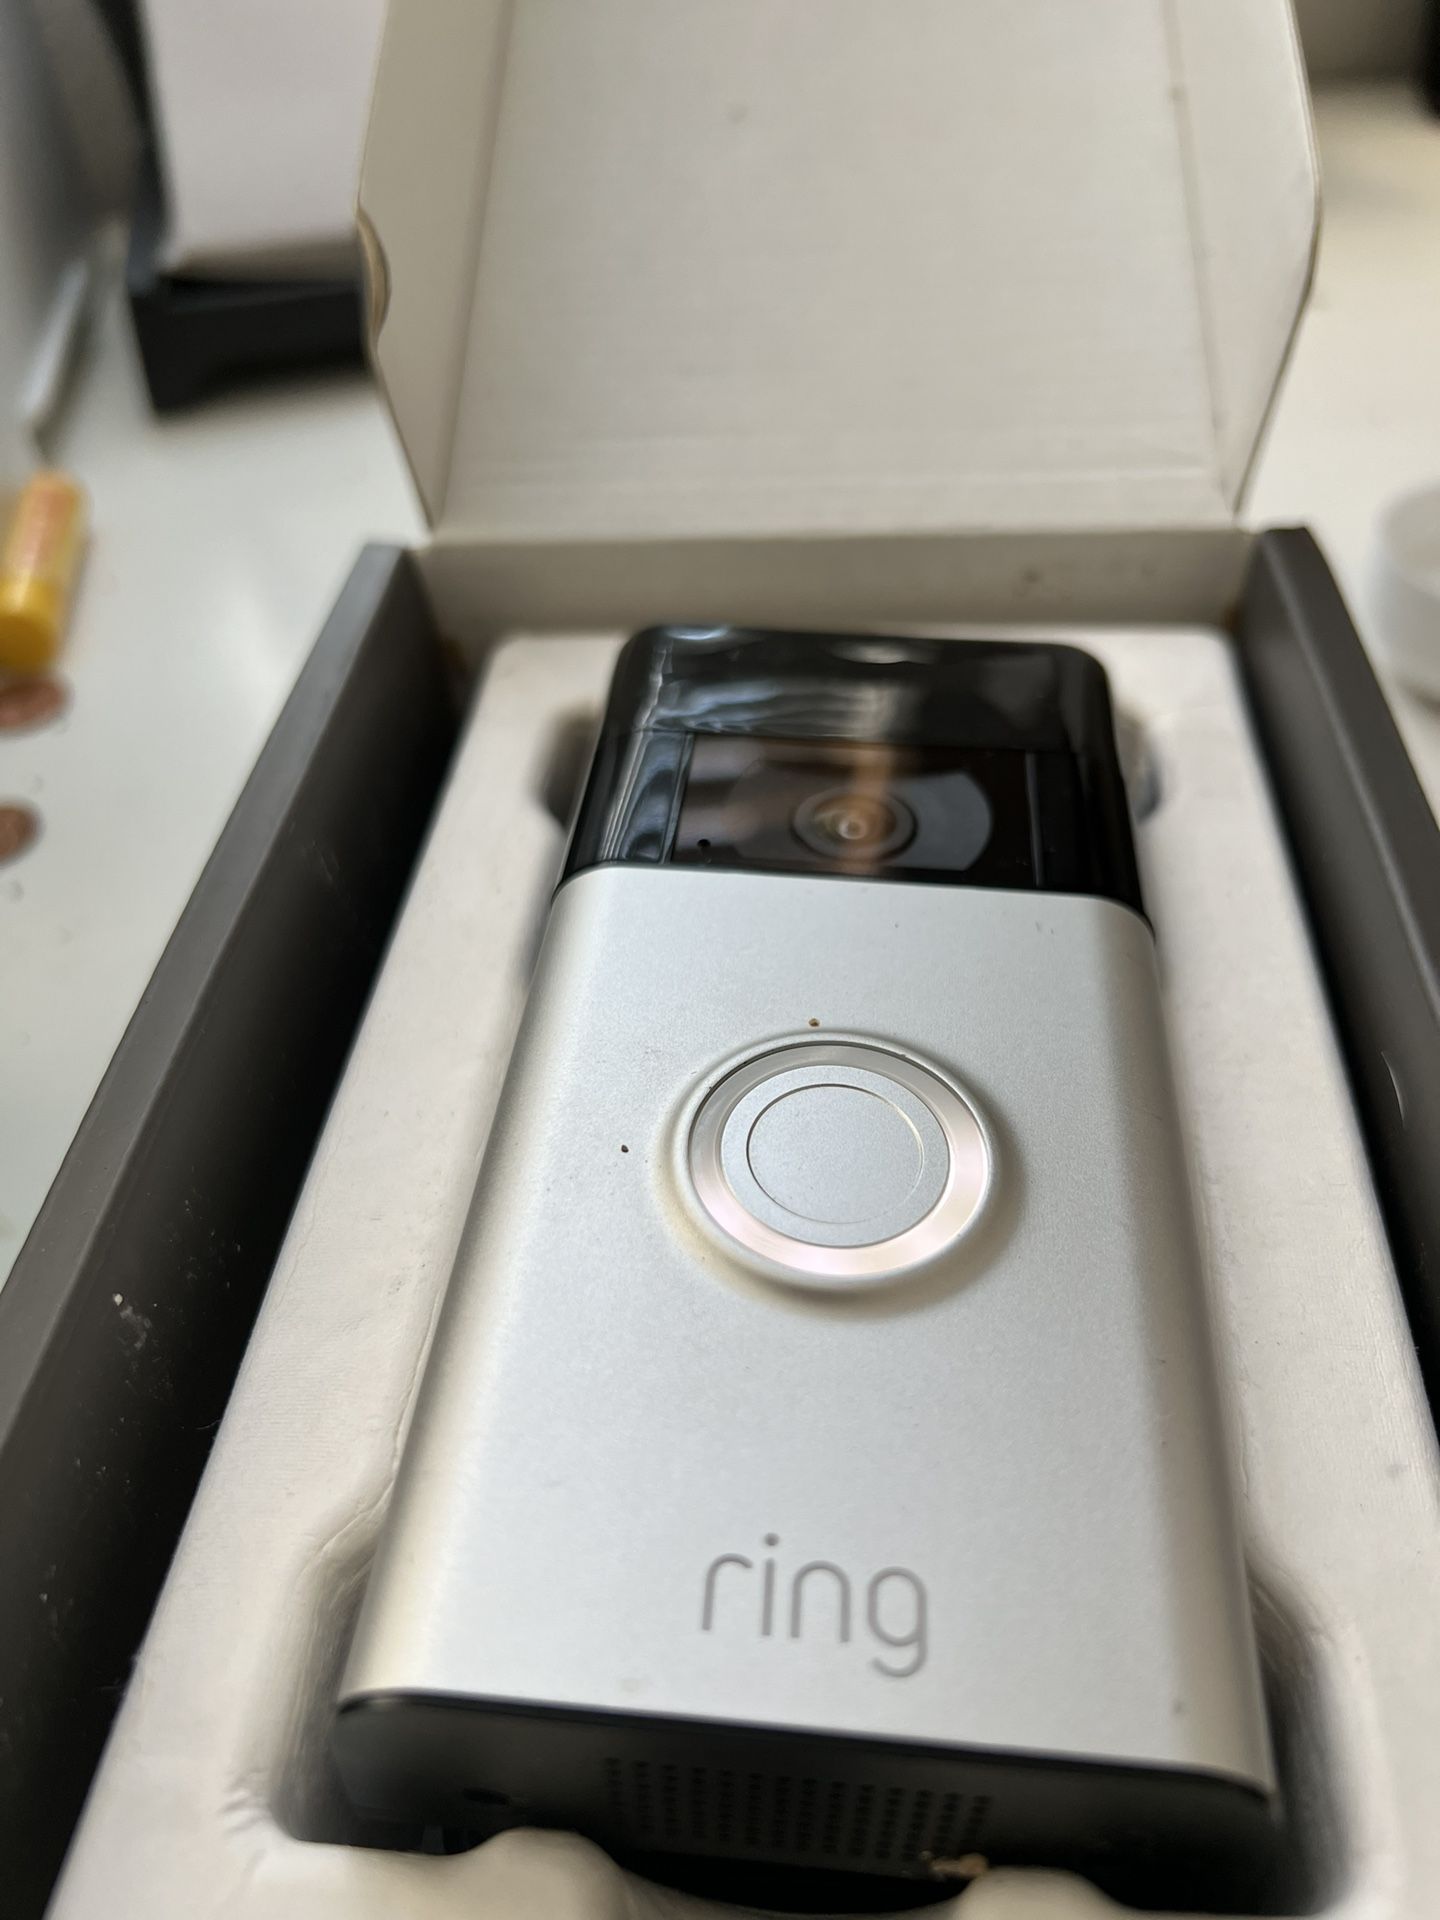 Ring Camera/Doorbell